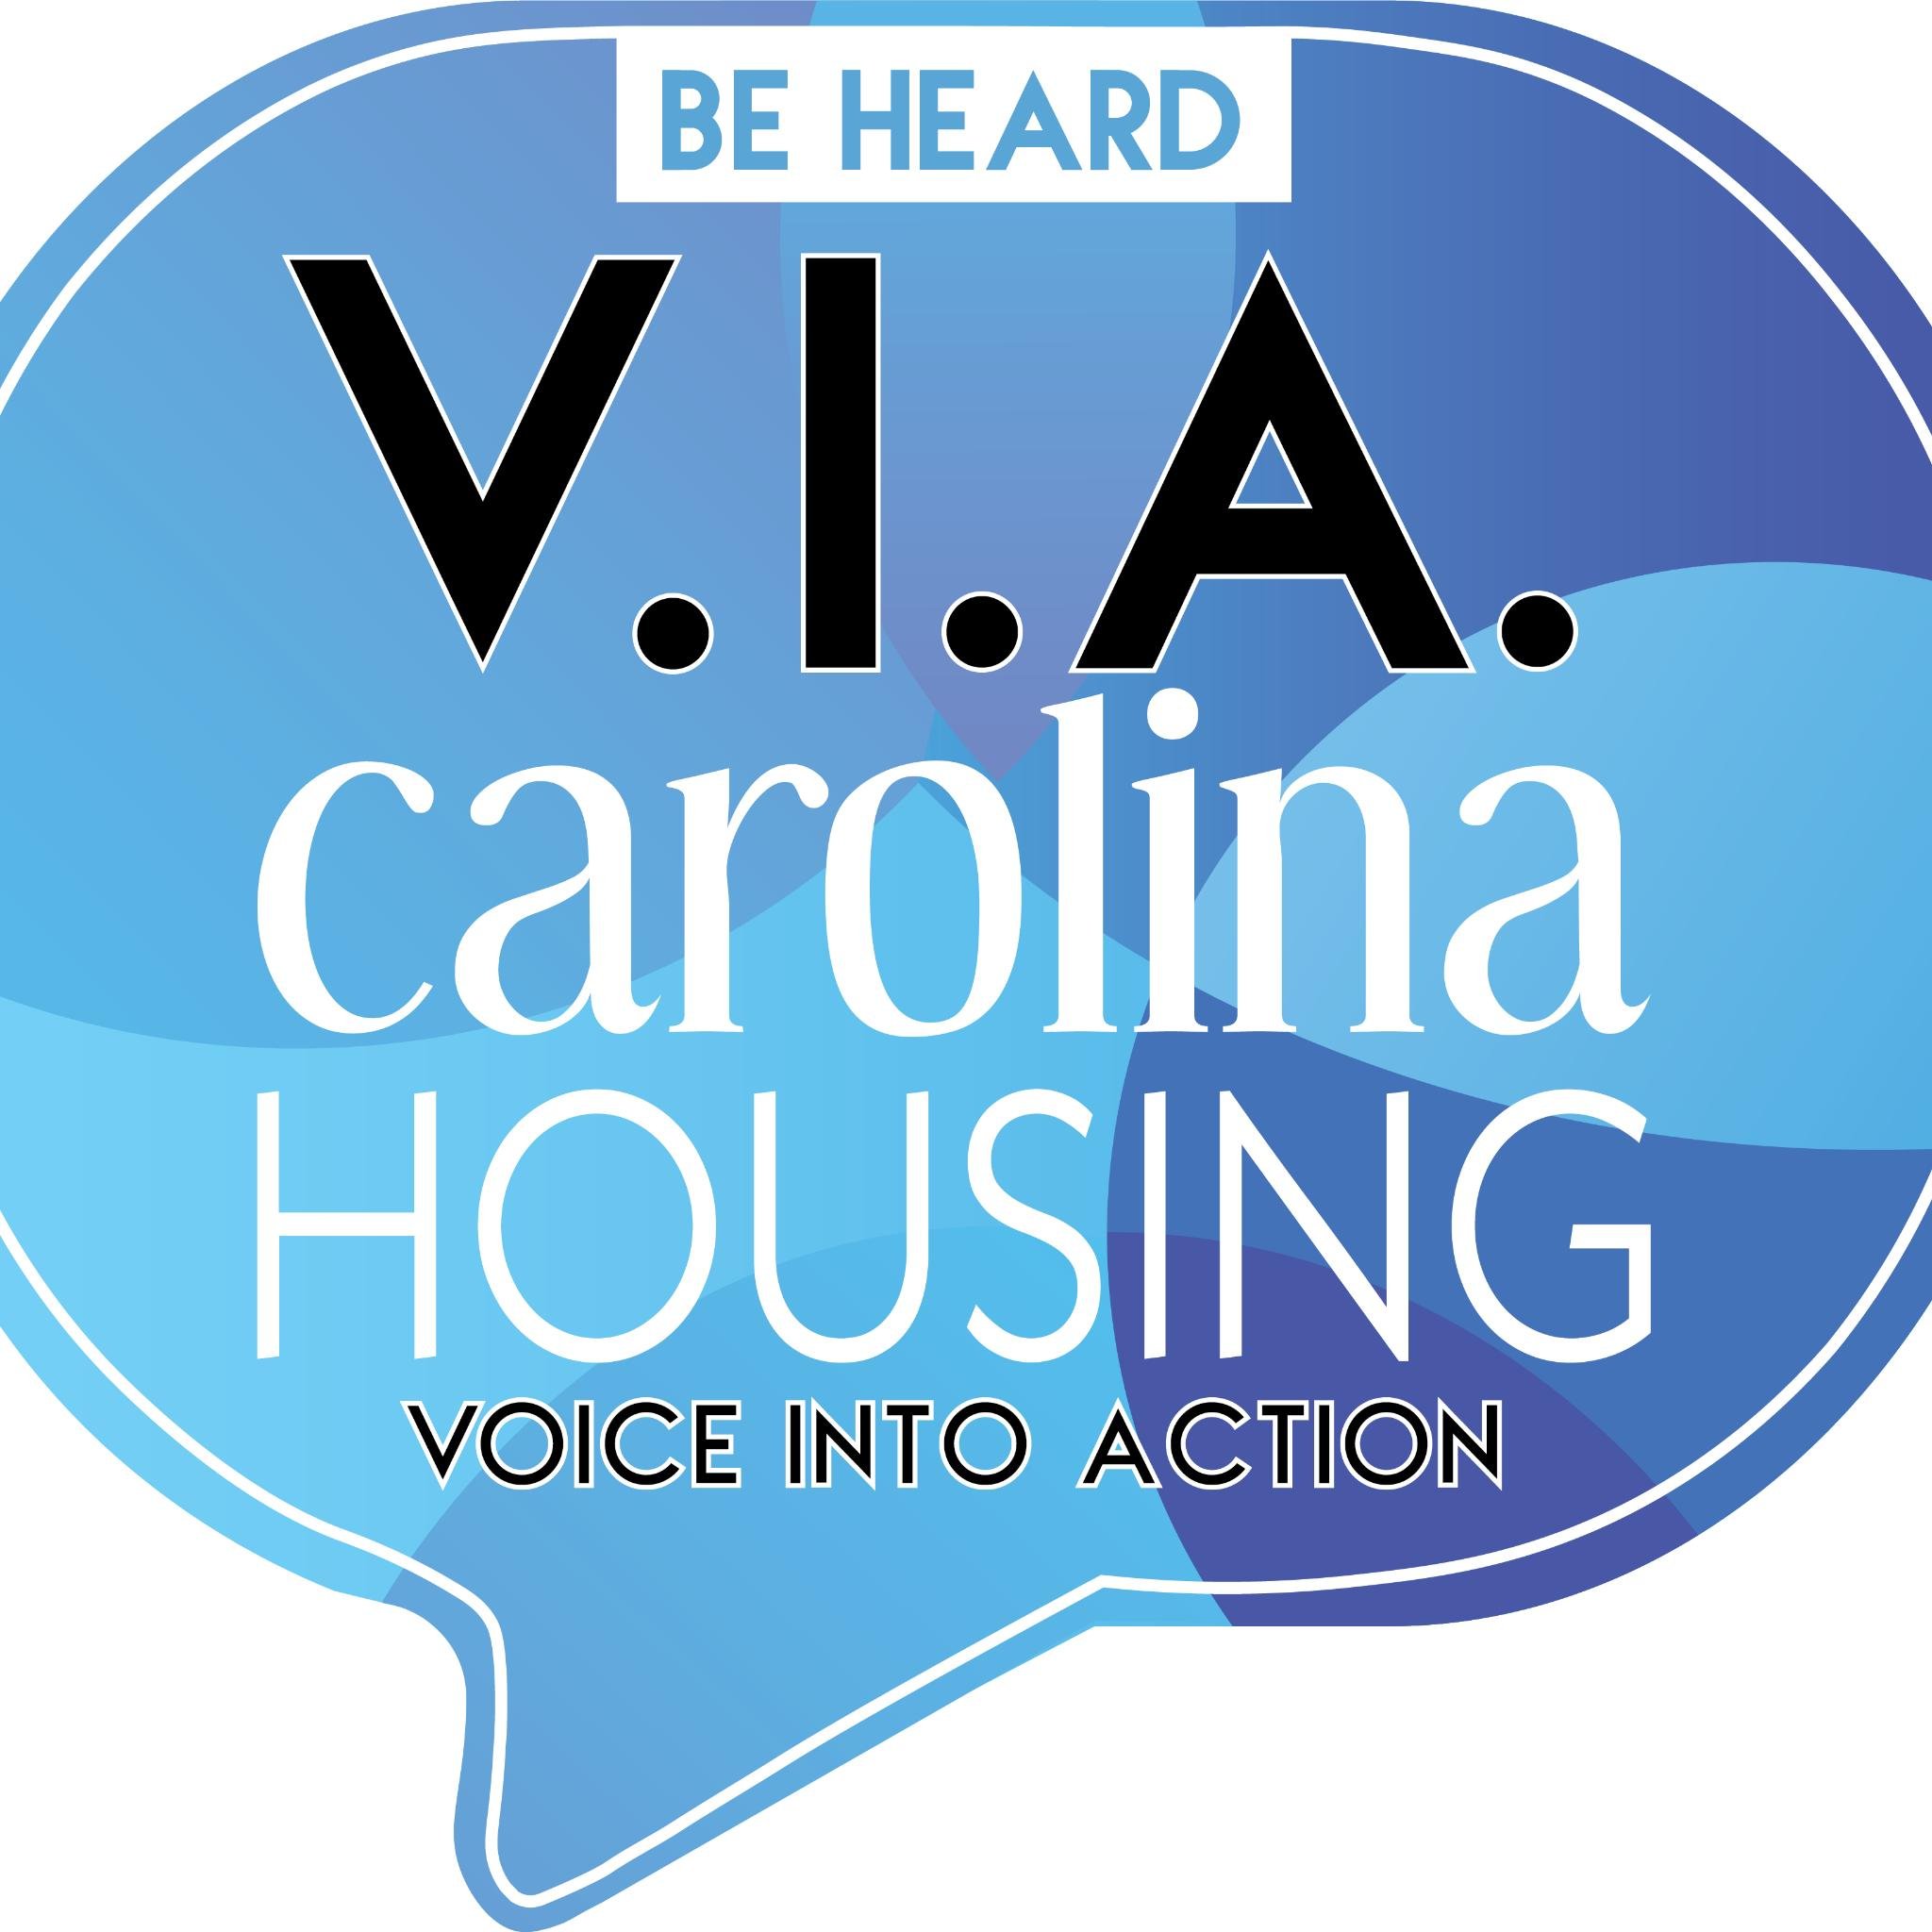 Be Heard VIA Carolina Housing